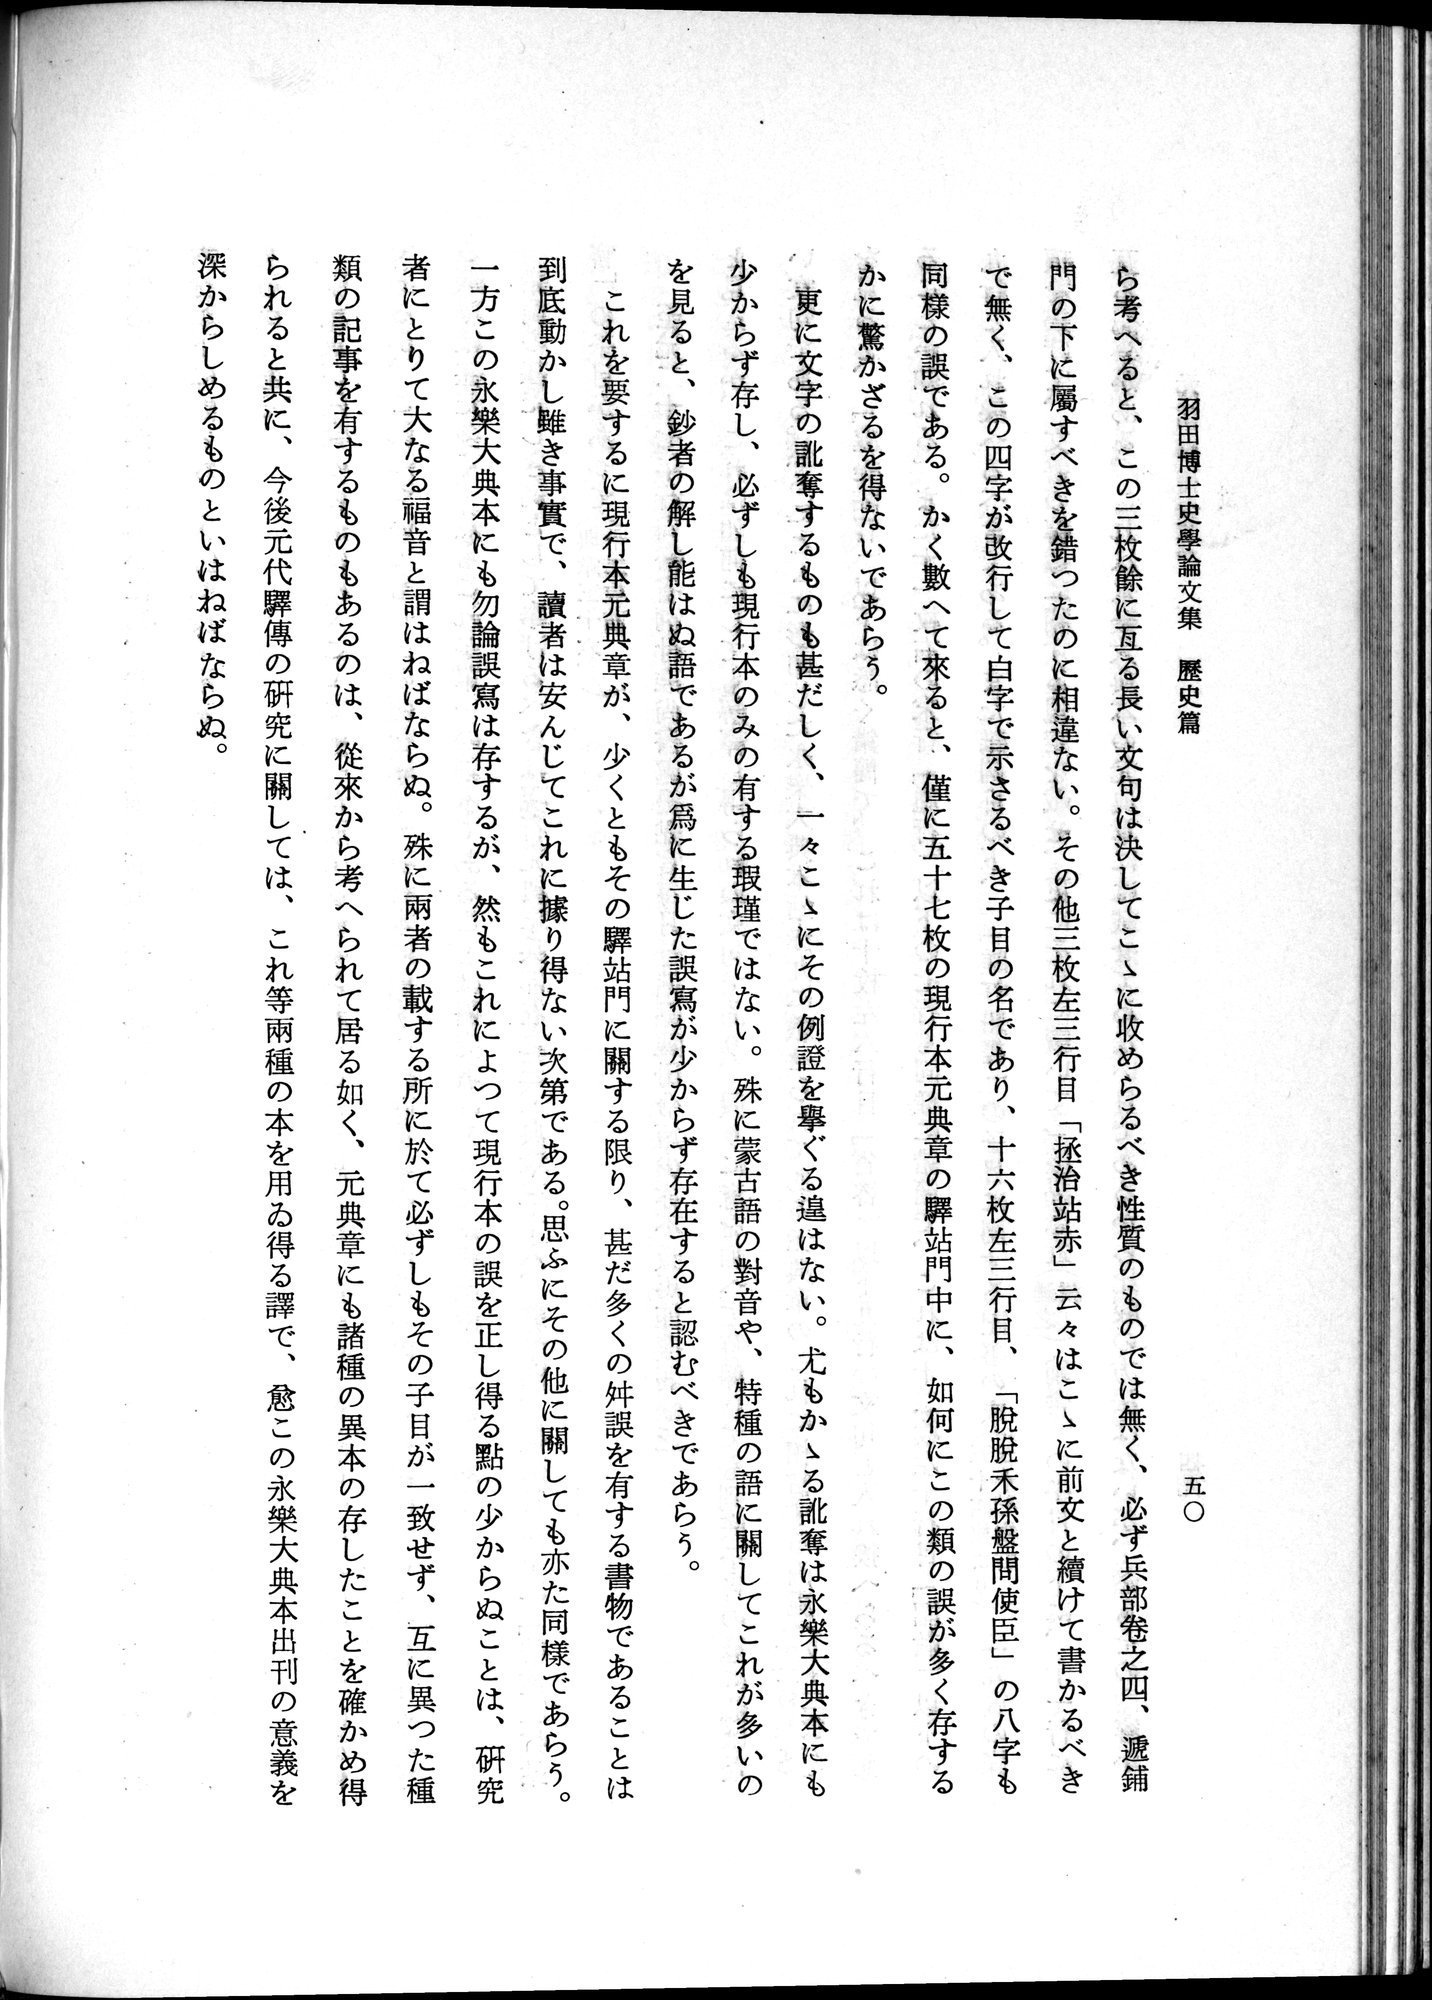 羽田博士史学論文集 : vol.1 / Page 88 (Grayscale High Resolution Image)